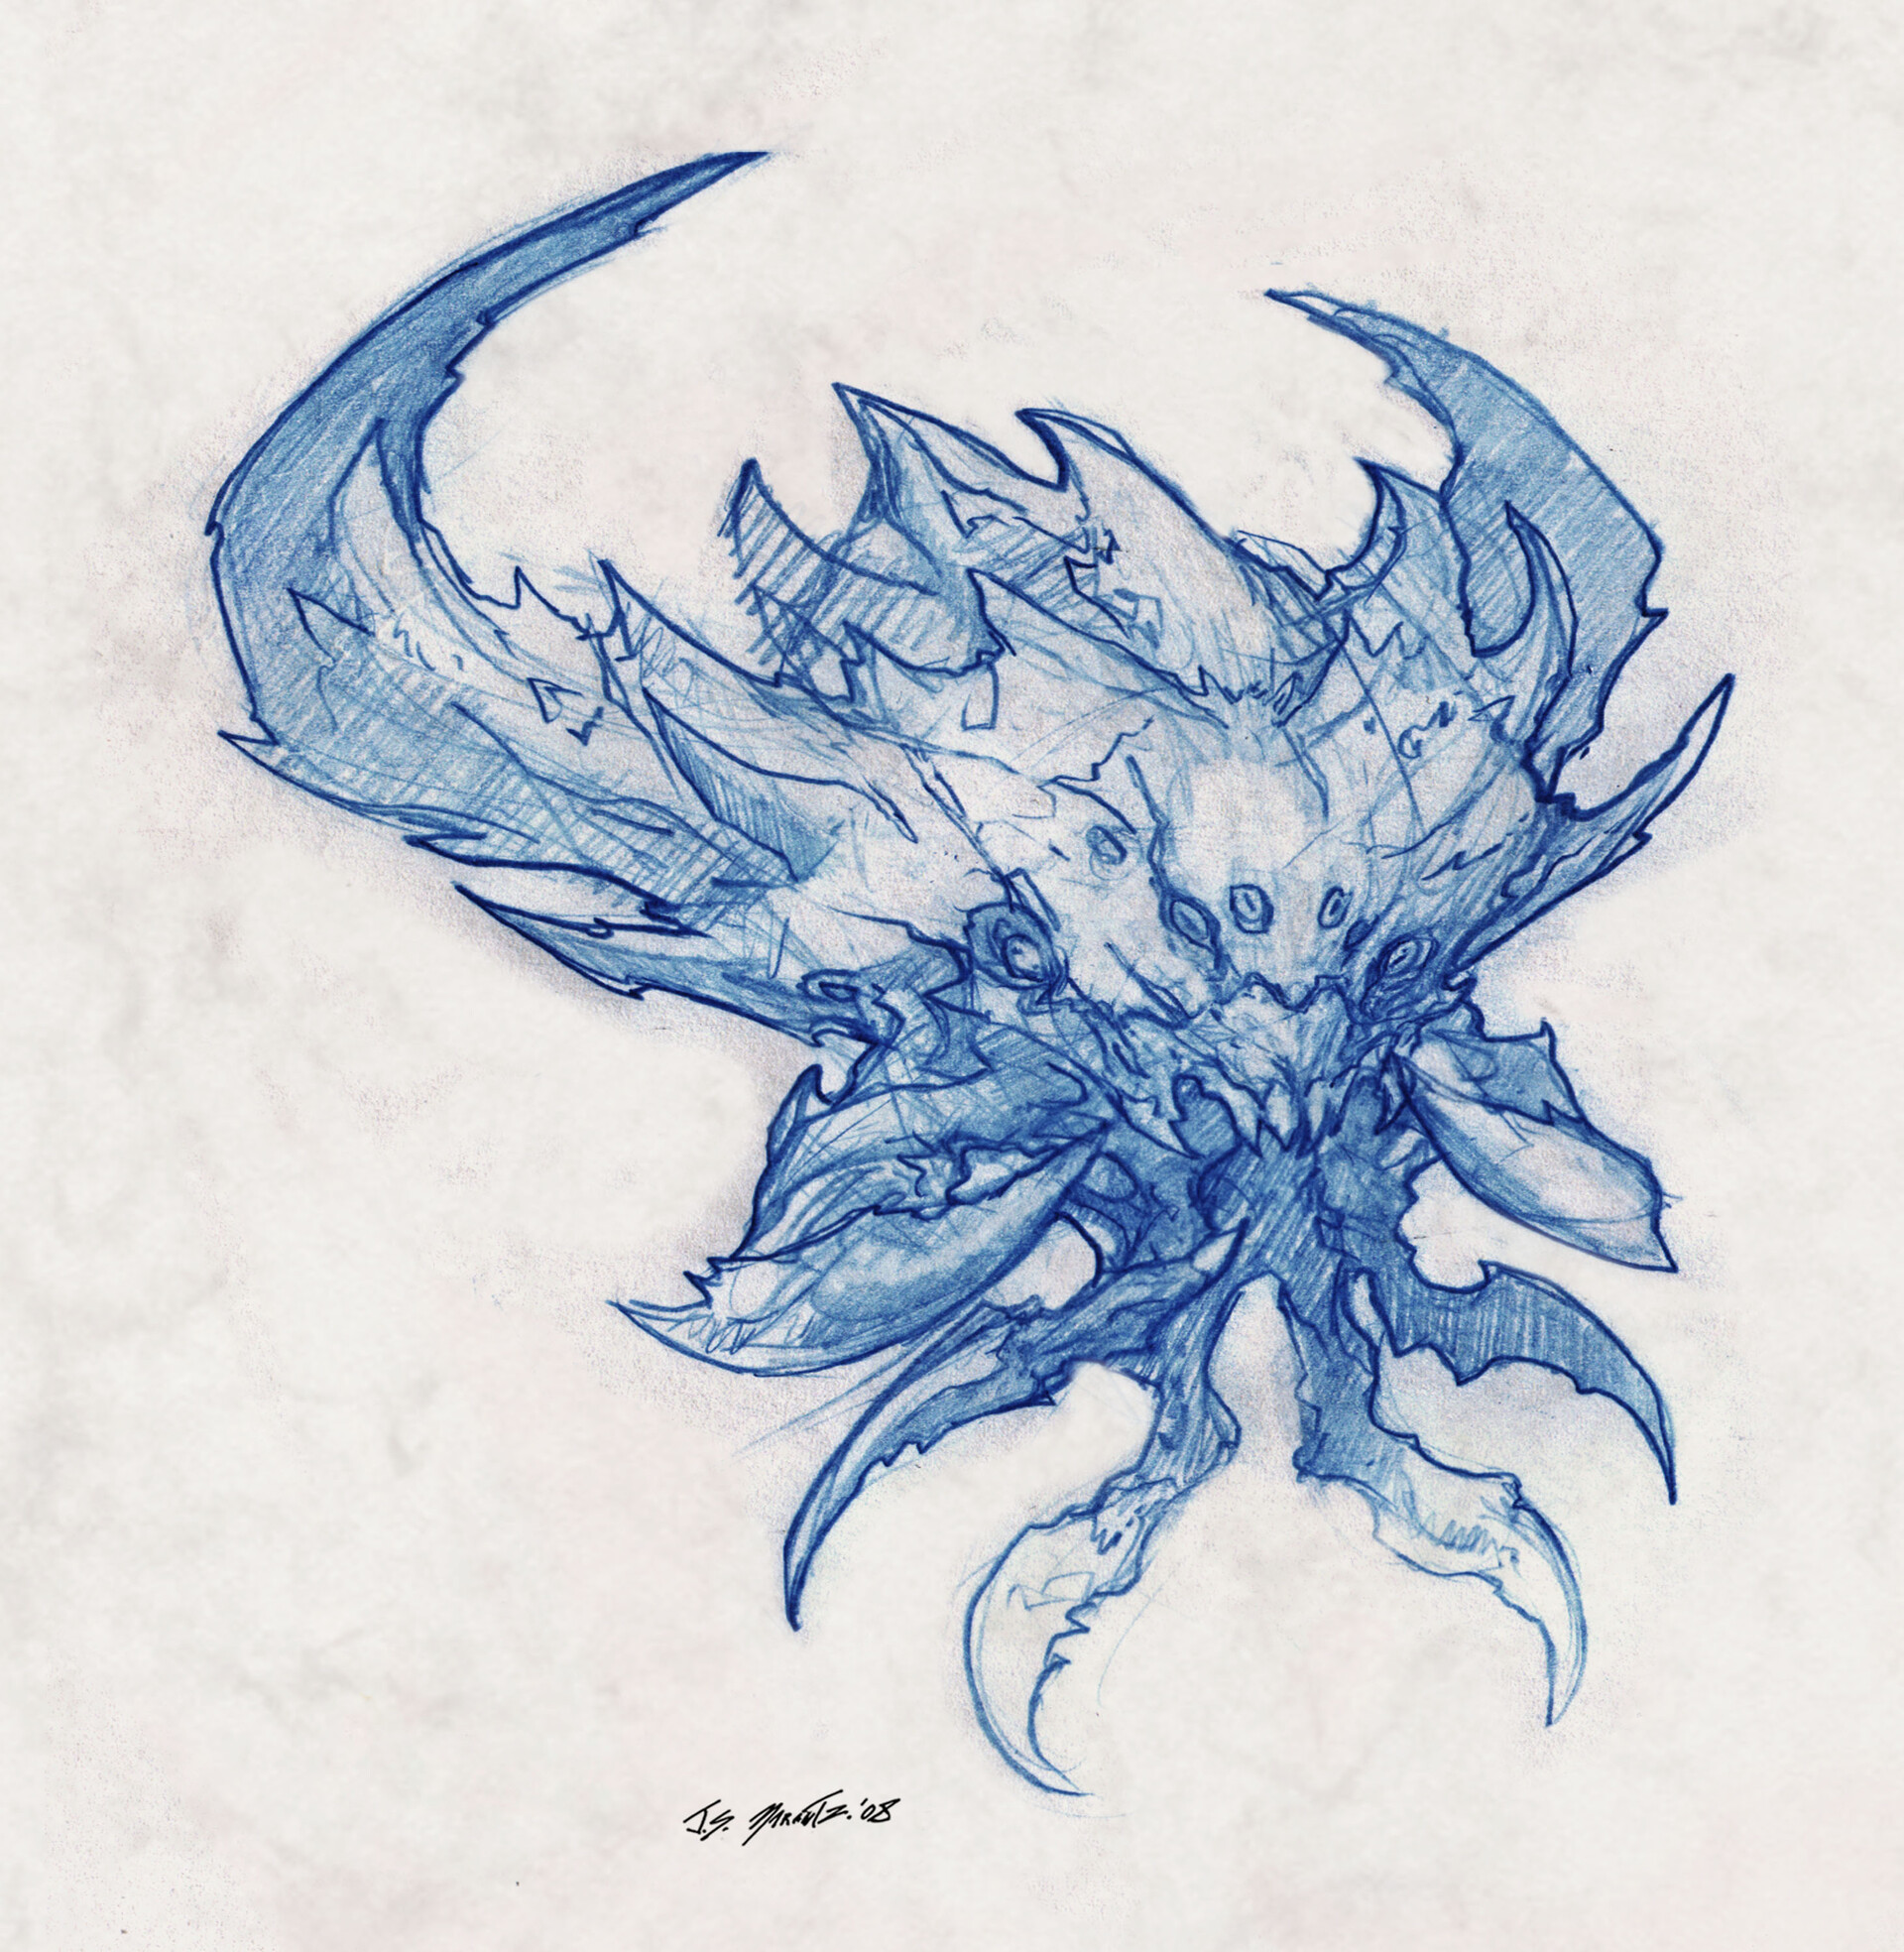 ArtStation - The Kraken Designs for Clash of the Titans